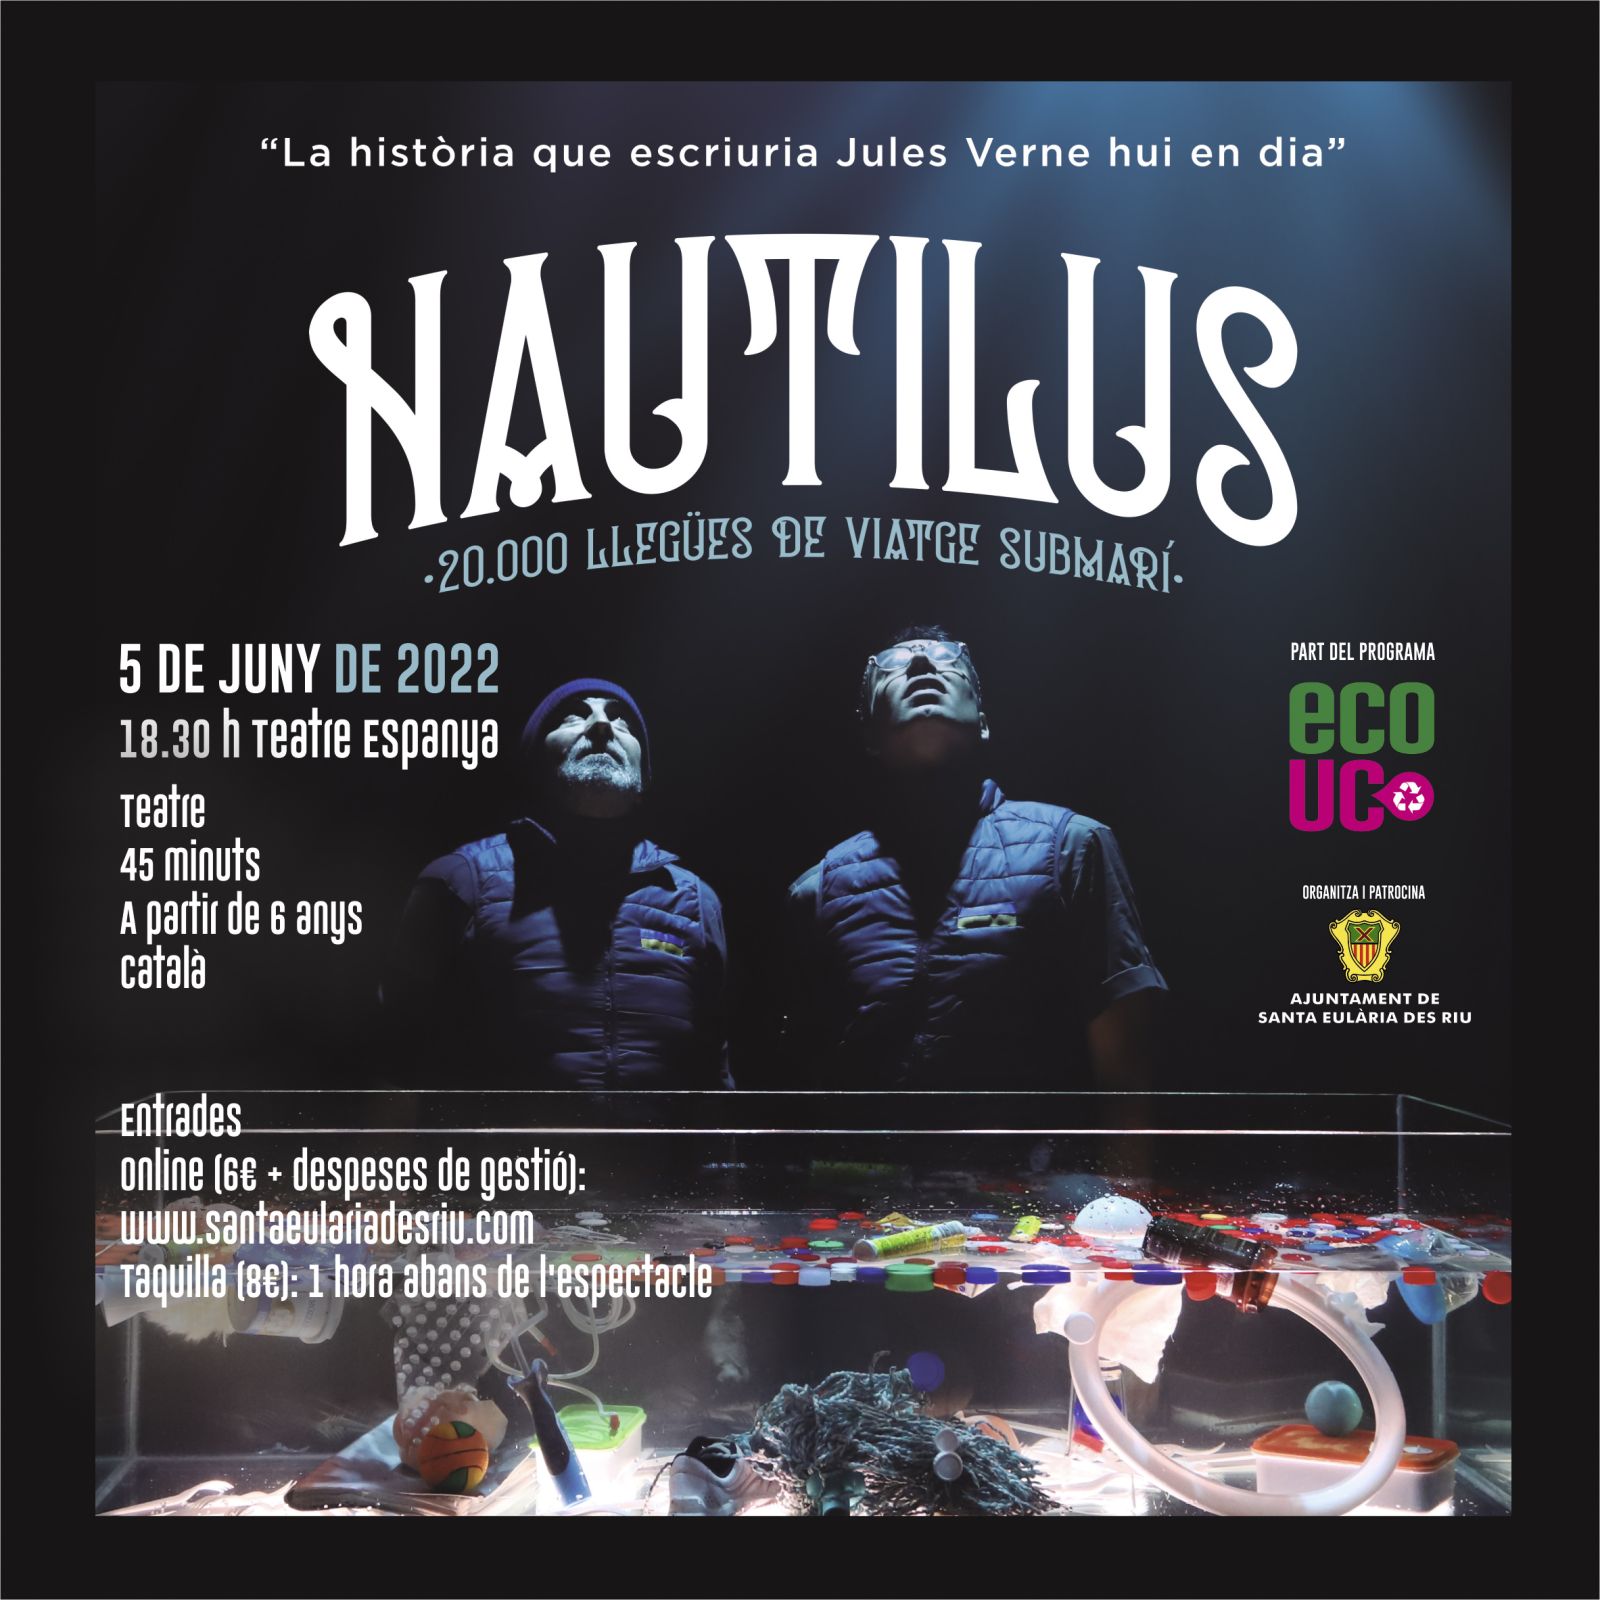 ‘Nautilus, 20.000 llegües de viatge submarí’, una versión actualizada del clásico de Julio Verne que pone el acento en el ecologismo